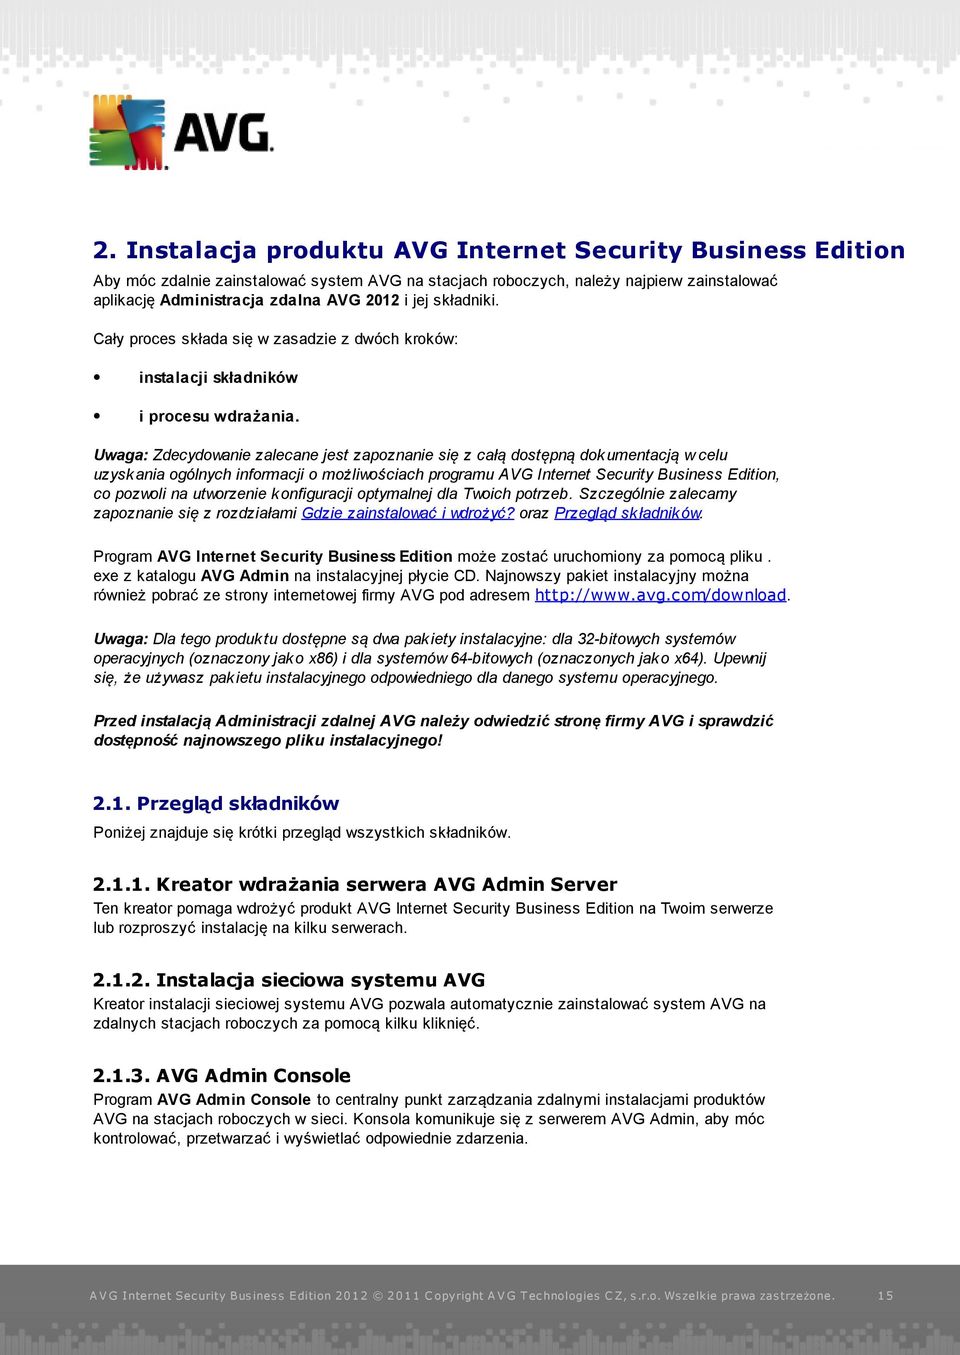 Uwaga: Zdecydowanie zalecane j est zapoznanie się z całą dostępną dokumentacj ą w celu uzyskania ogólnych informacj i o możliwościach programu AVG Internet Security Business Edition, co pozwoli na